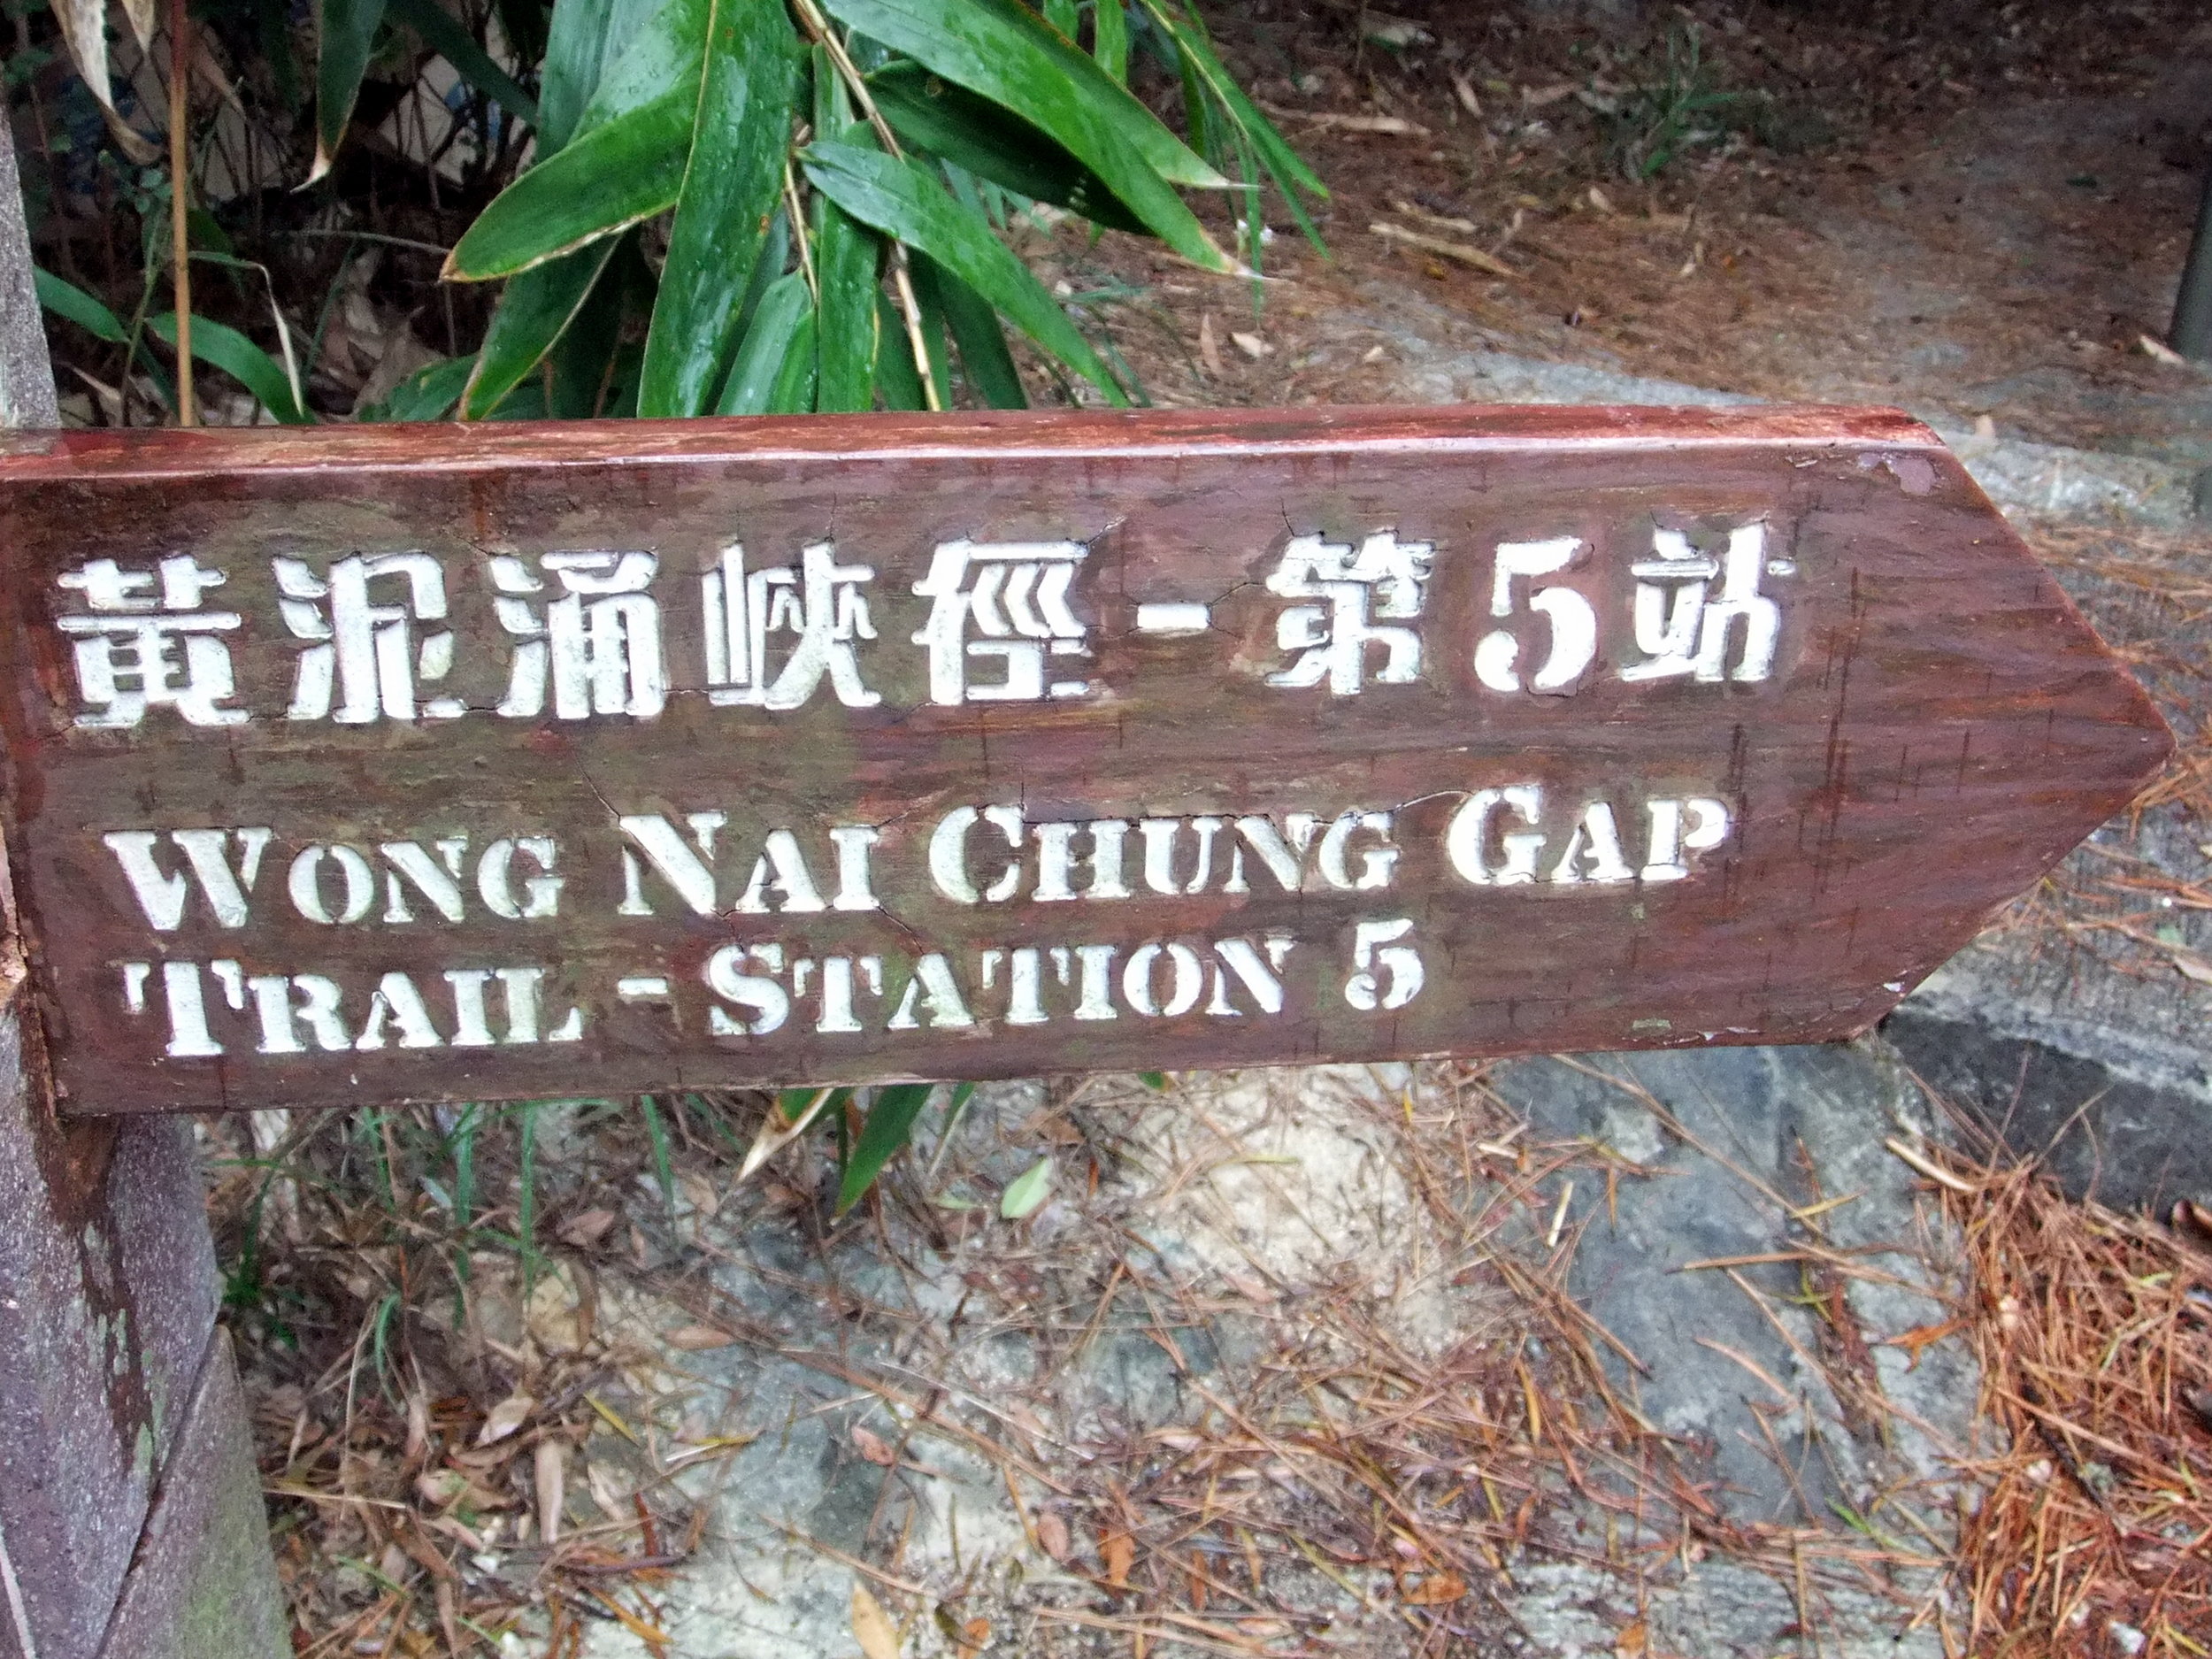 Wong Nai Chung Gap Trail